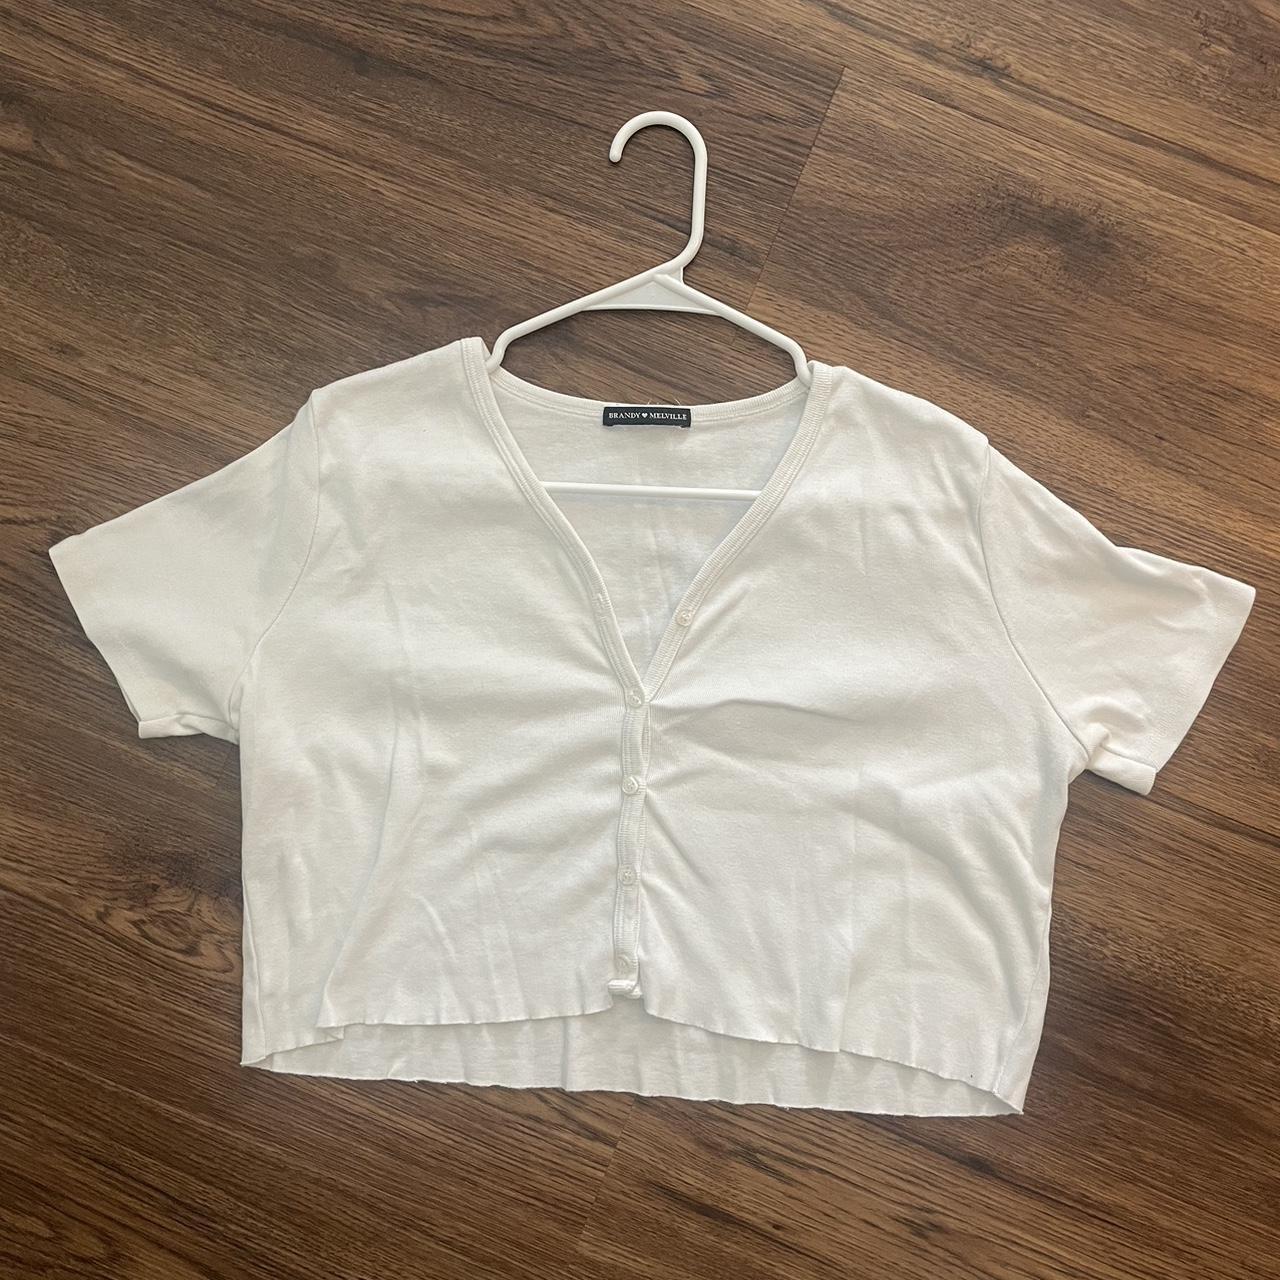 Brandy Melville Crop Top Shirt Button Down Shirts